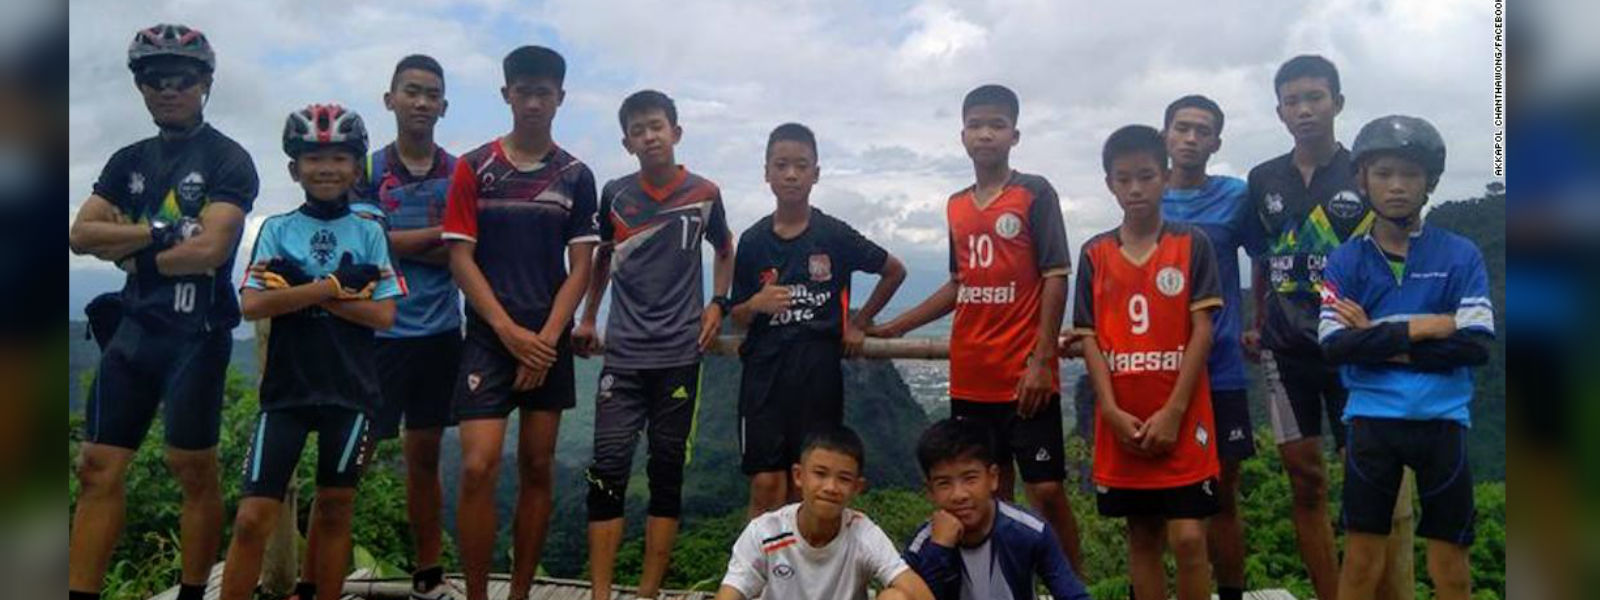 Thailand: Missing boys found, rescue underway 